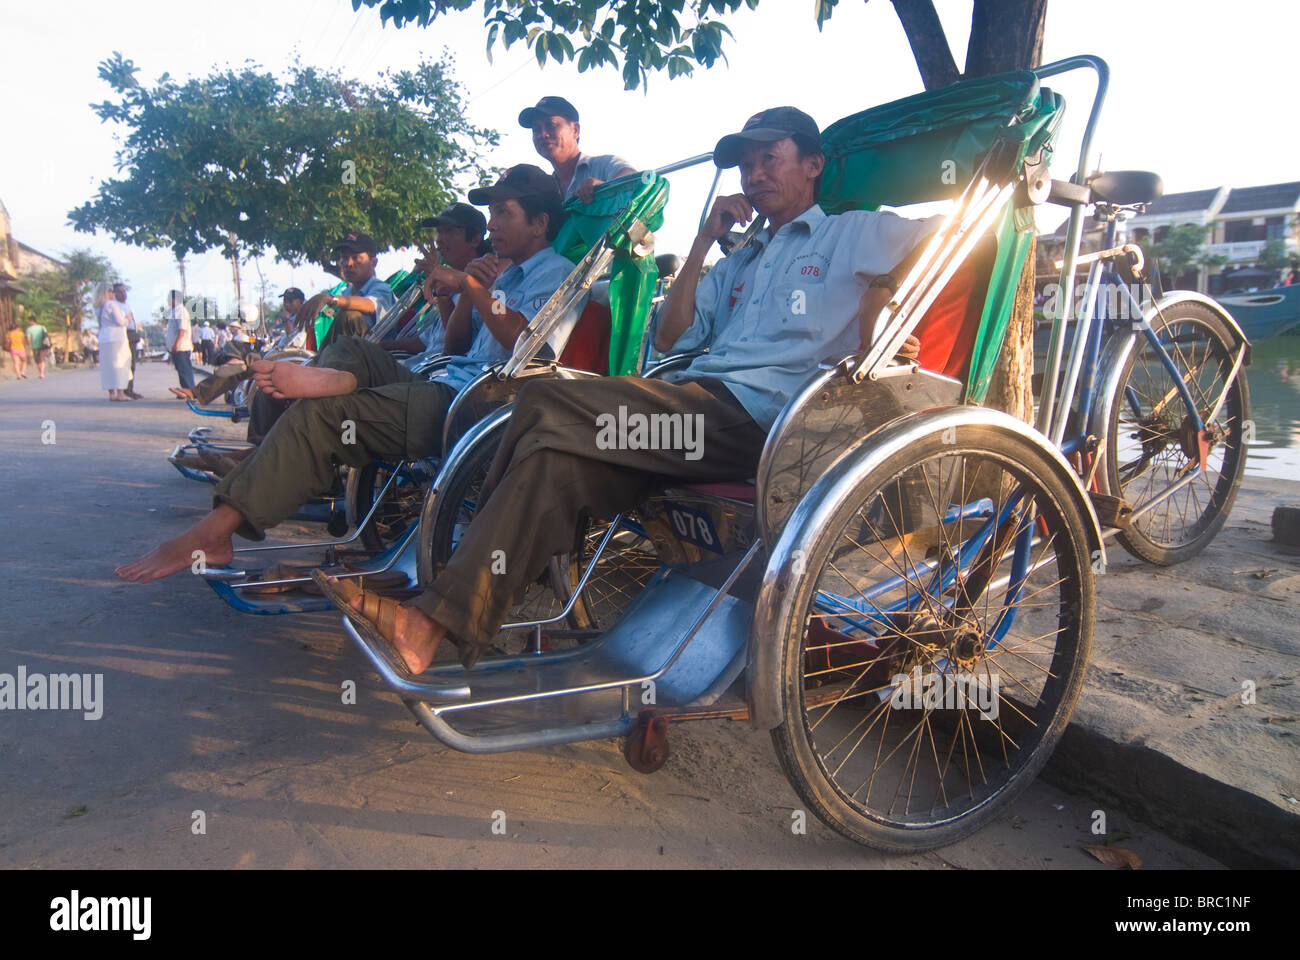 Los conductores de rickshaw sentado en los rickshaws esperando clientes, Hoi An, Vietnam, Indochina Foto de stock